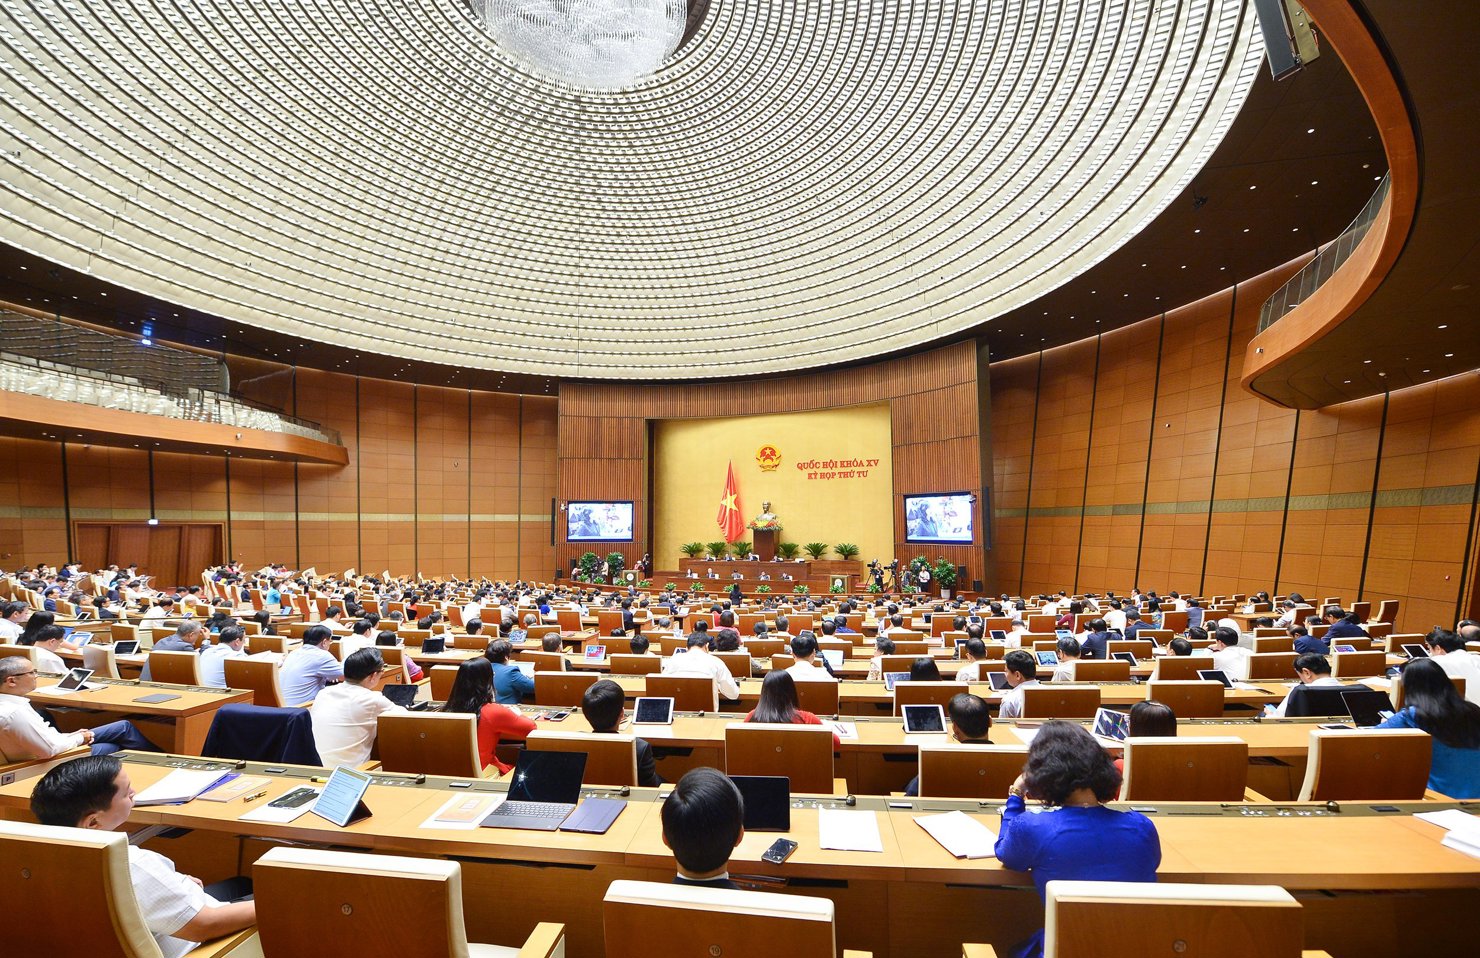 Trong cả ngày 27/10, thảo luận tại hội trường về tình hình kinh tế - xã hội đã có 42 đại biểu phát biểu, 7 đại biểu tranh luận.